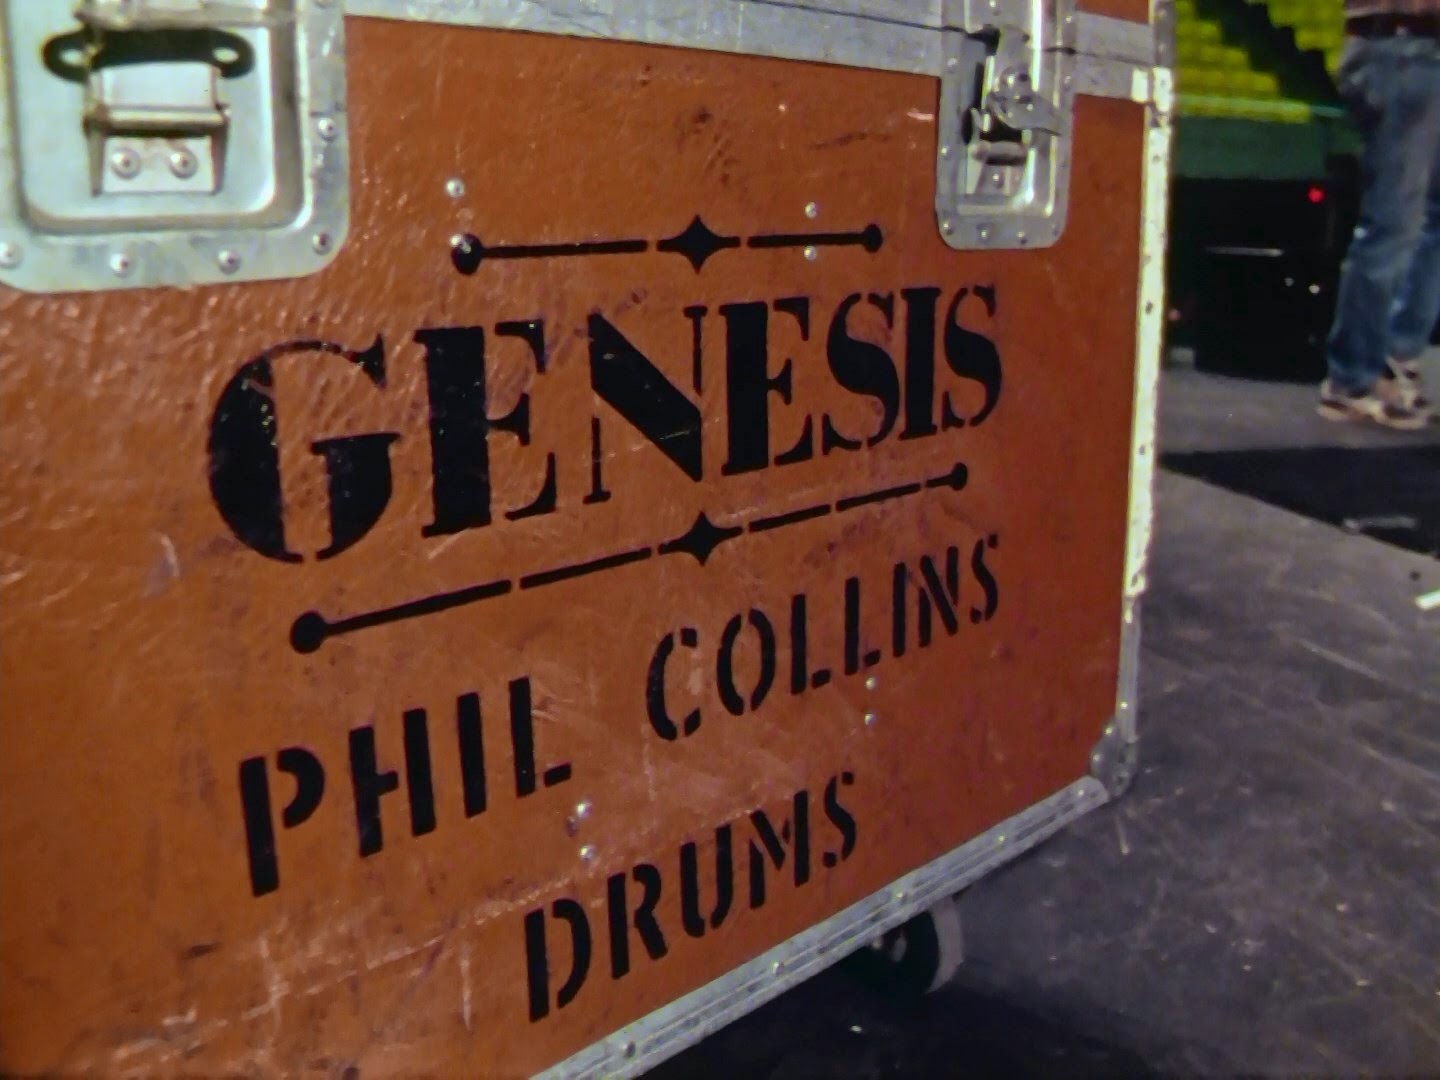 Genesis - Three Sides Live |1981 |1080p.| Concierto |Recital